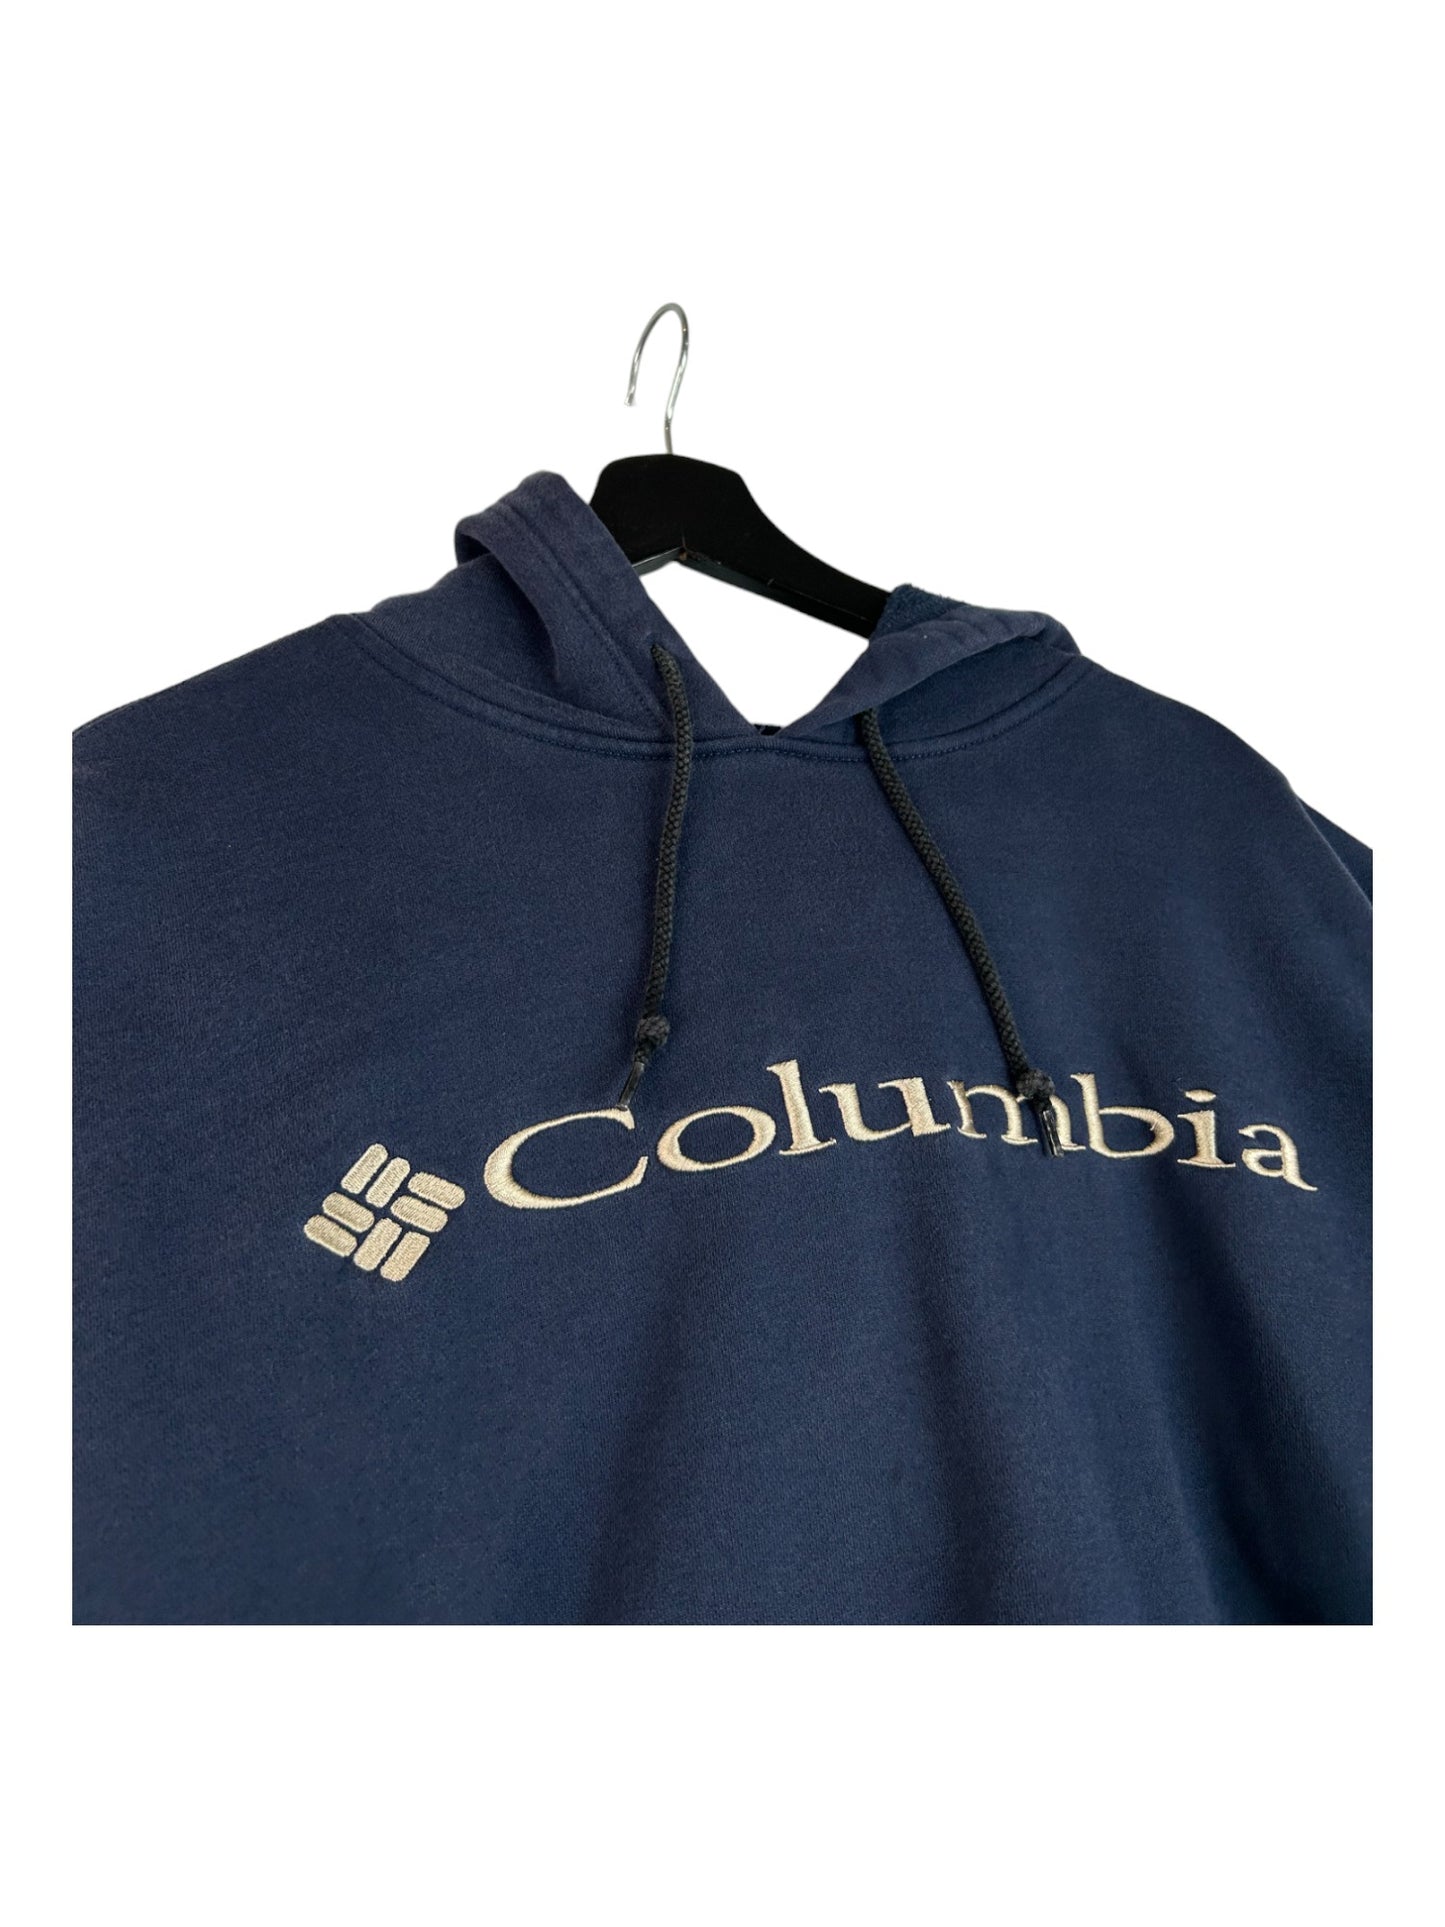 Columbia Hoodie